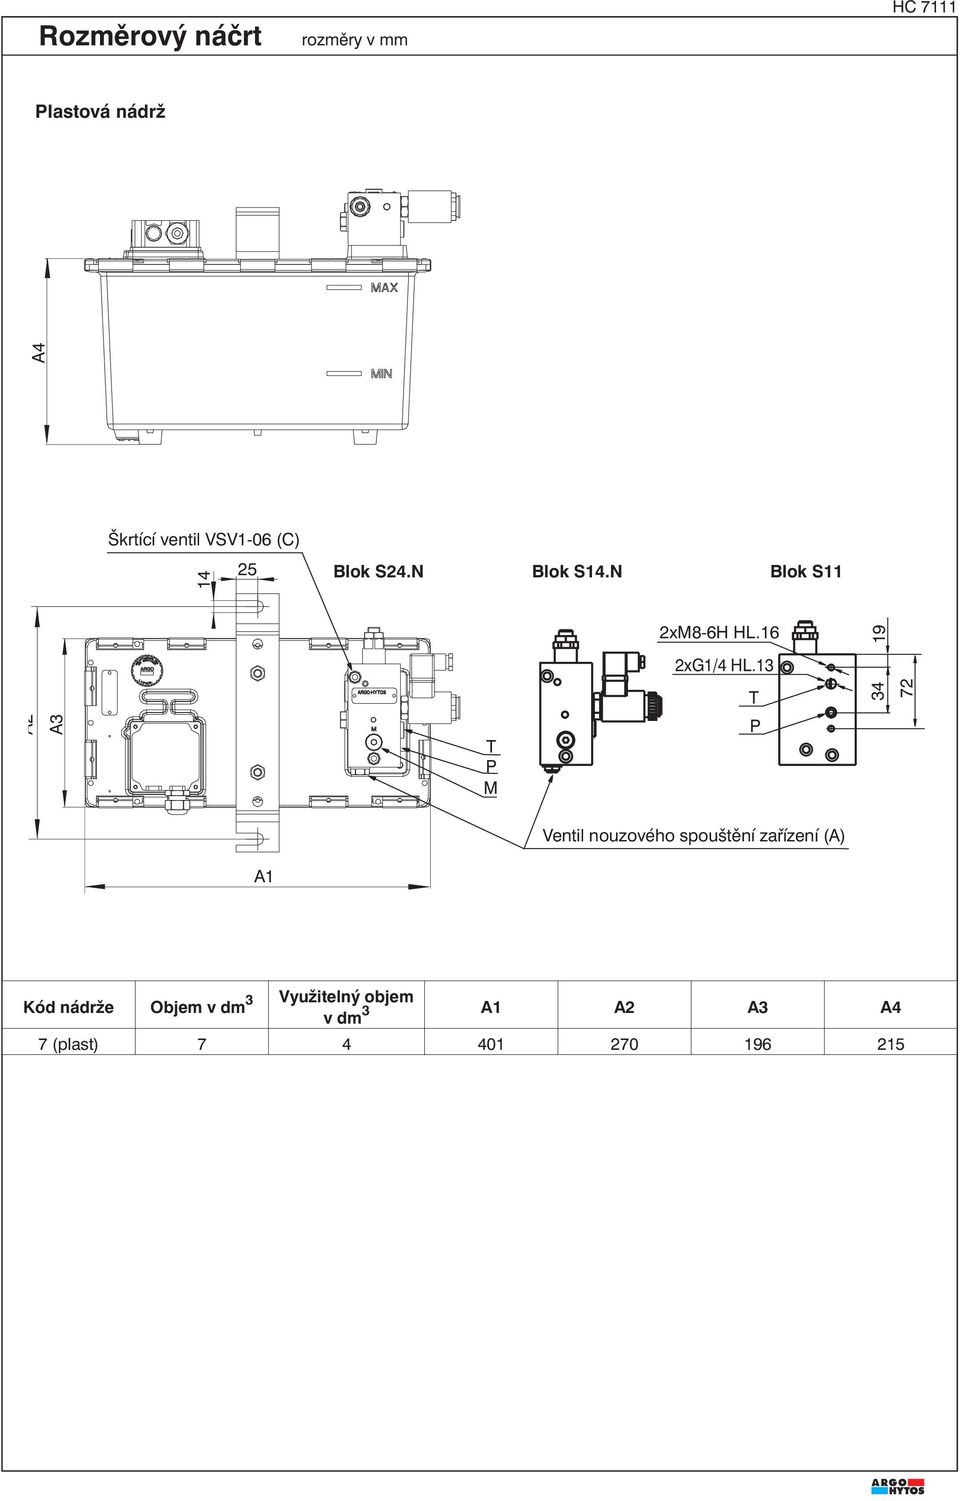 N Blok S11 A3 M 34 72 Ventil nouzového spouštění zařízení (A) A1 Kód